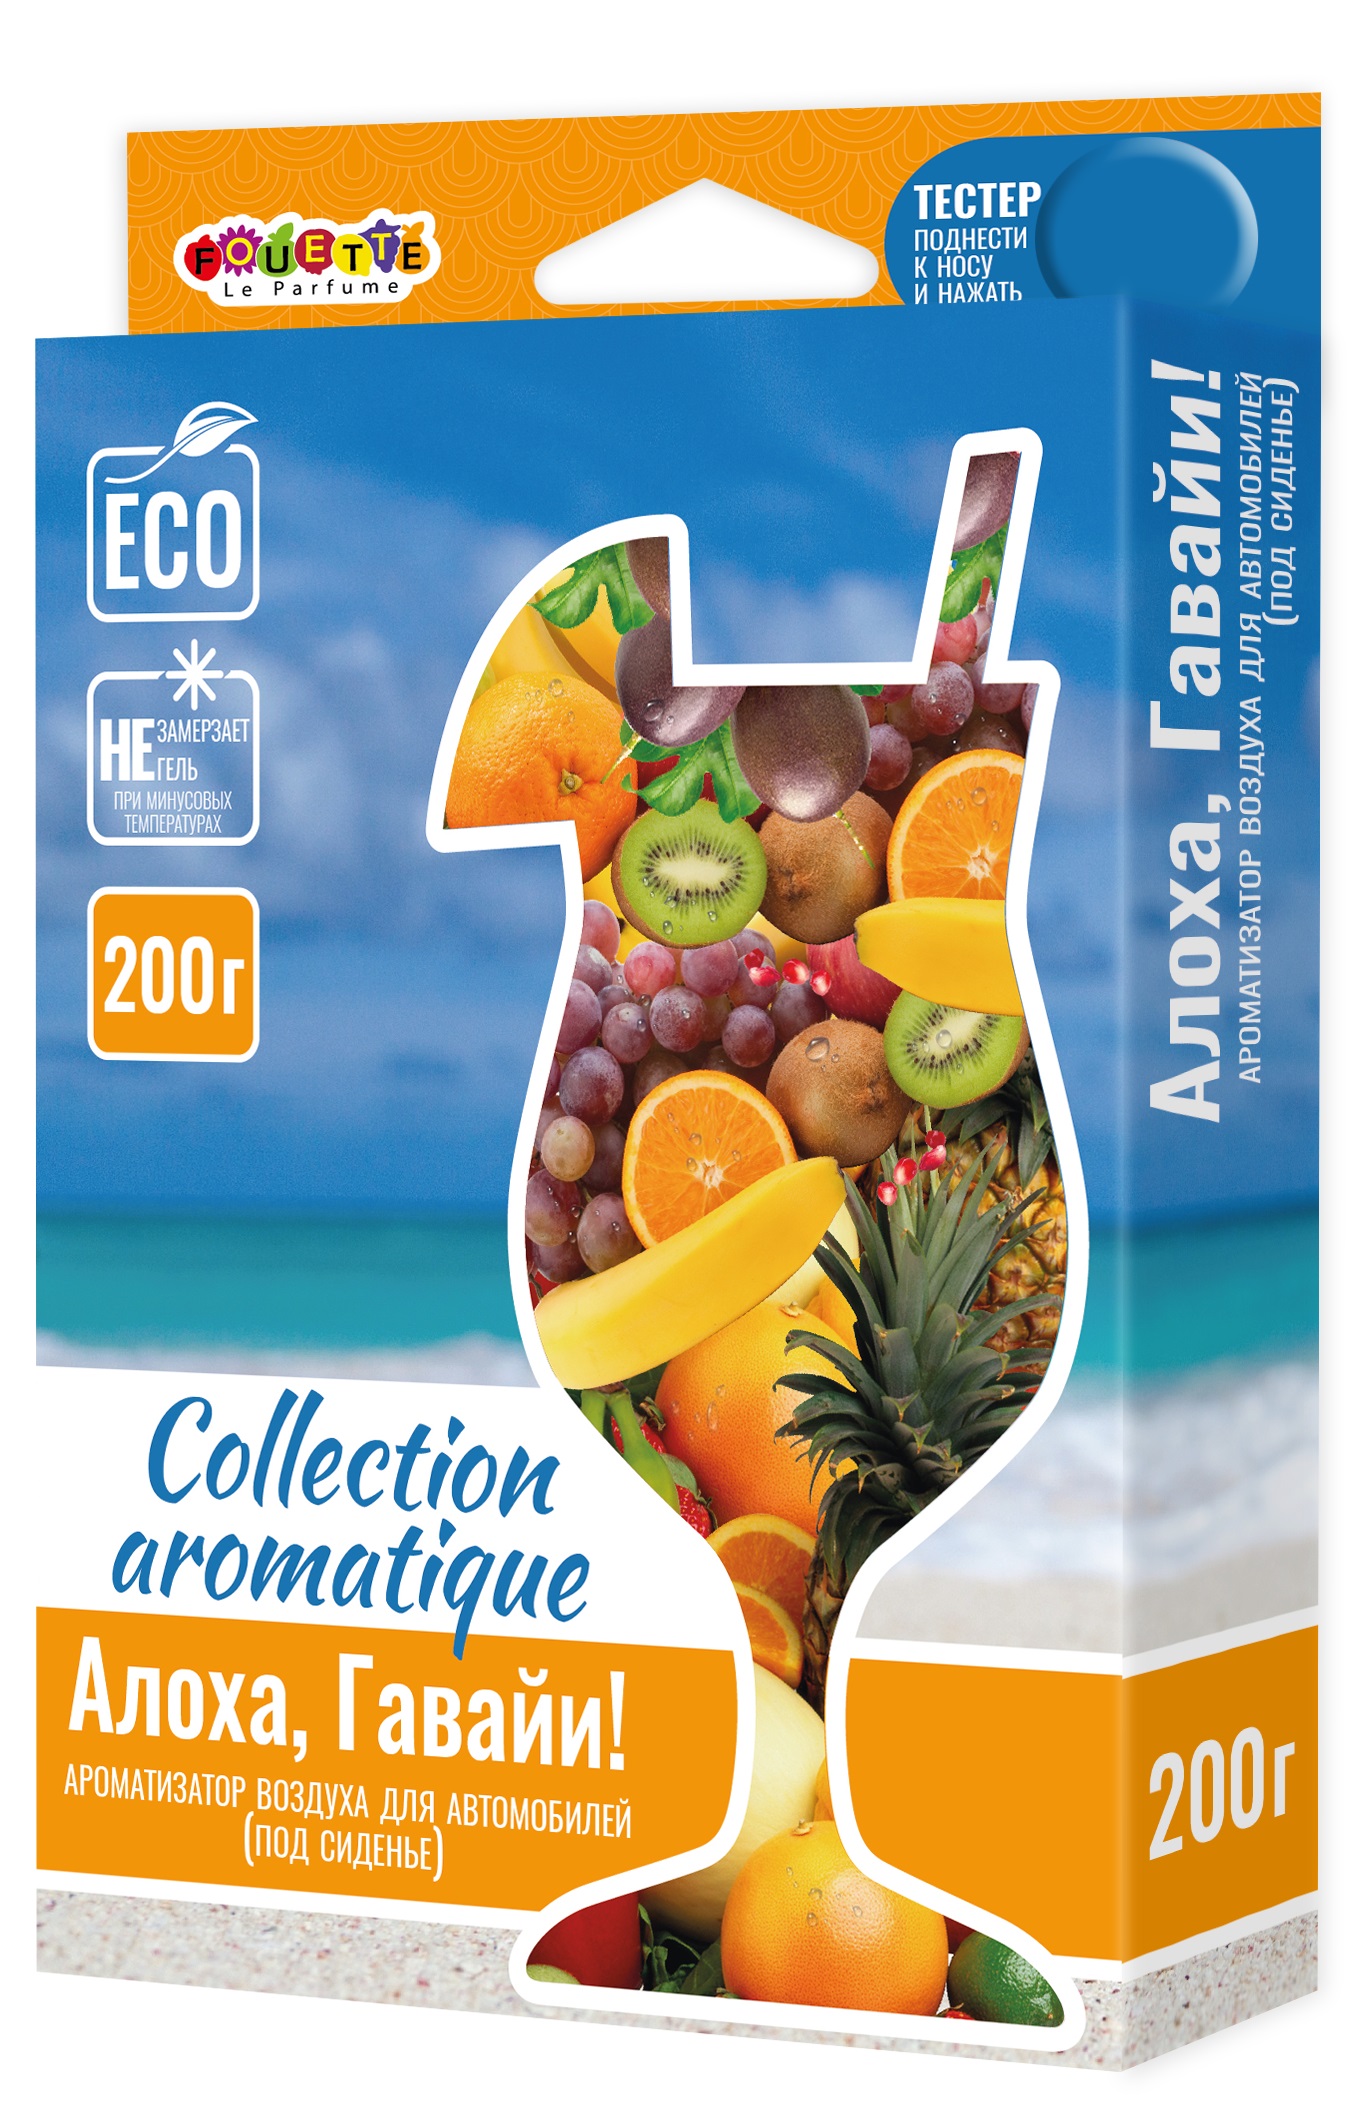    Collection Aromatigue (200) 